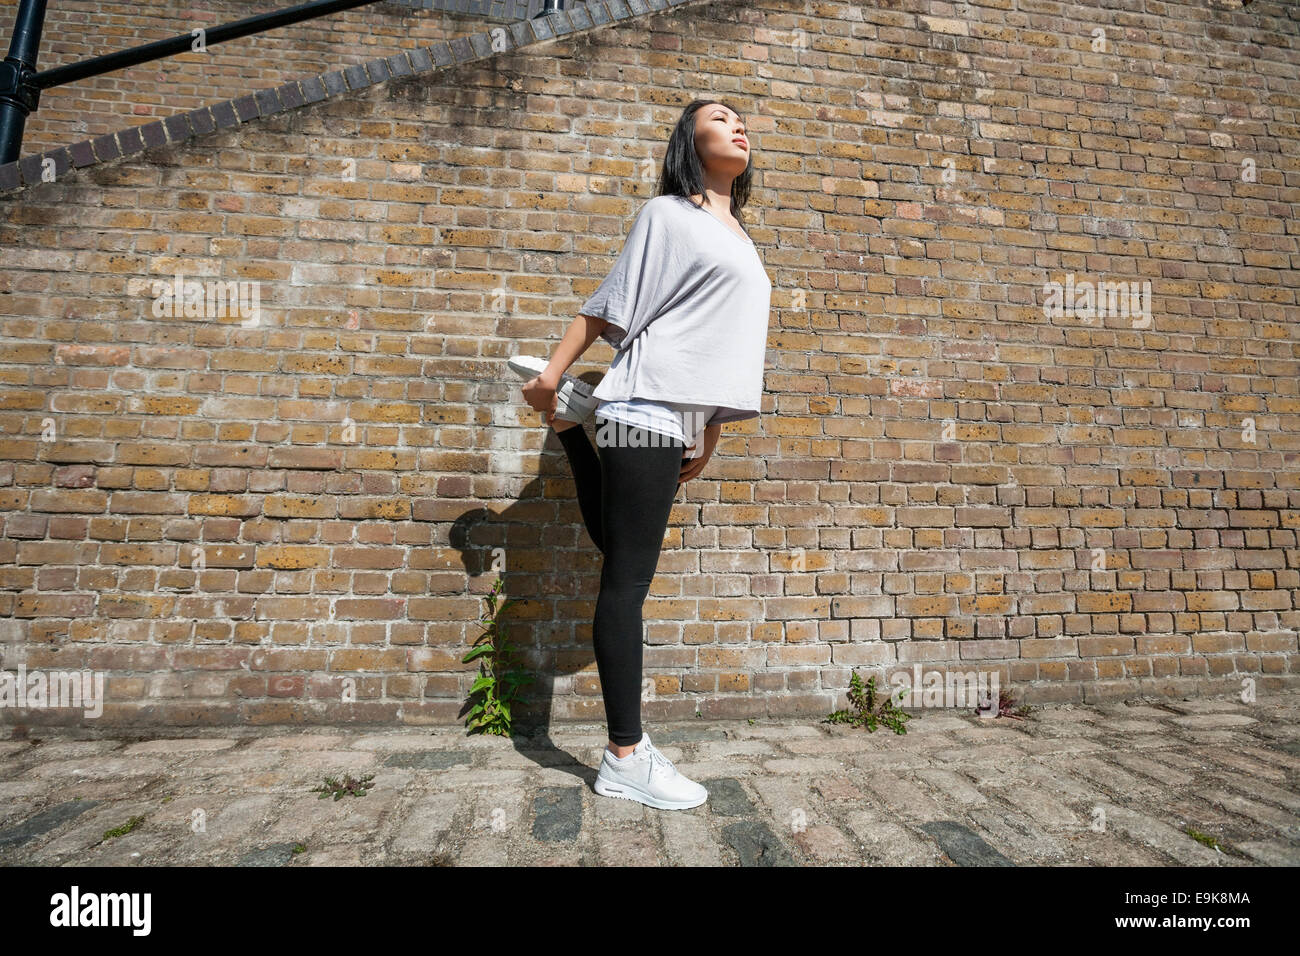 Longueur totale de jeunes fit woman stretching against brick wall Banque D'Images